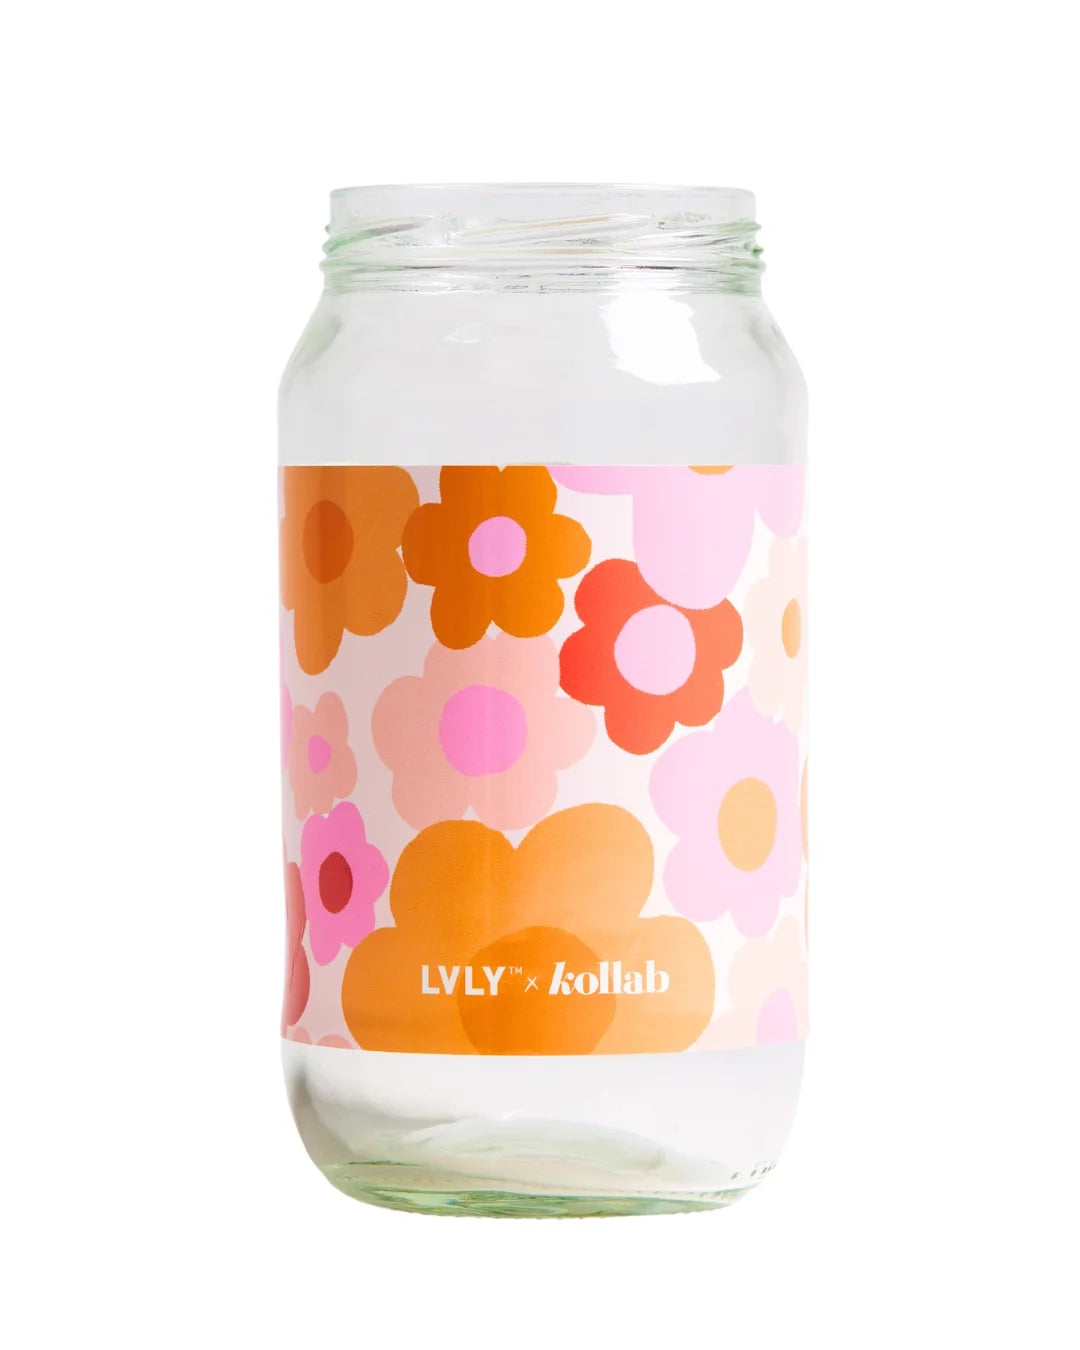 Kollab x LVLY Jar Label